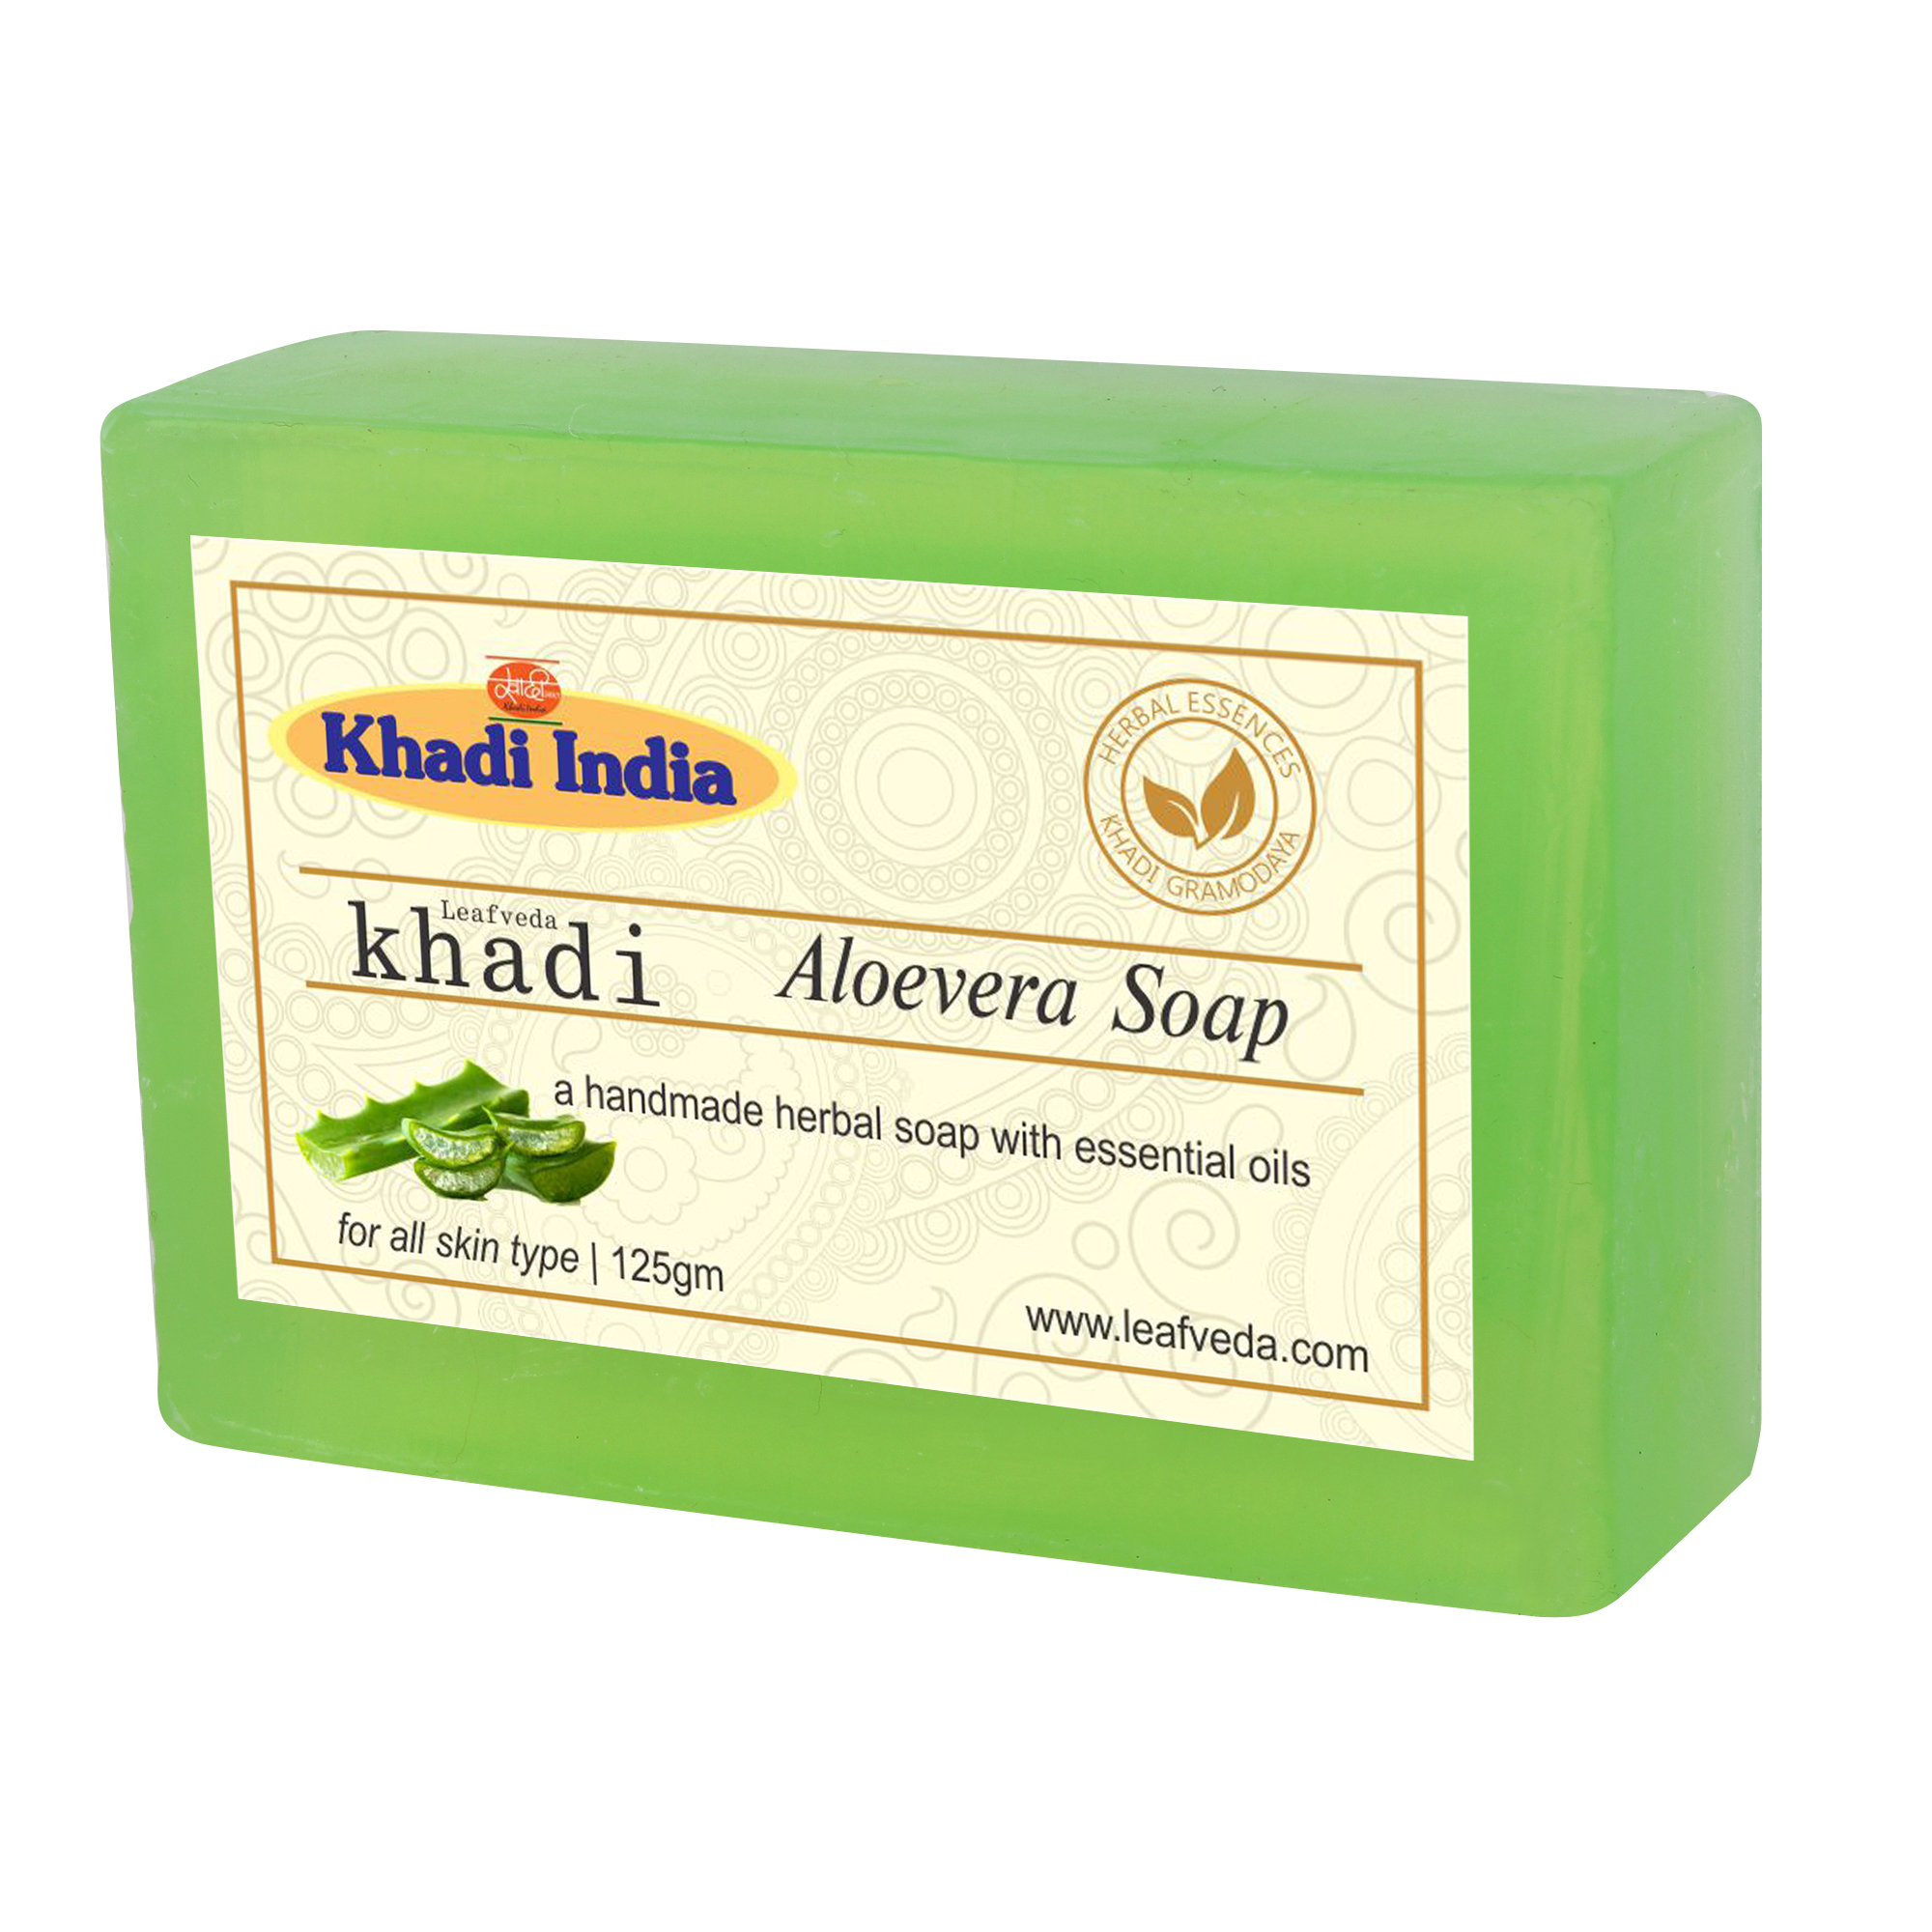 Buy Khadi Leafveda Aloe Vera Soap at Best Price Online